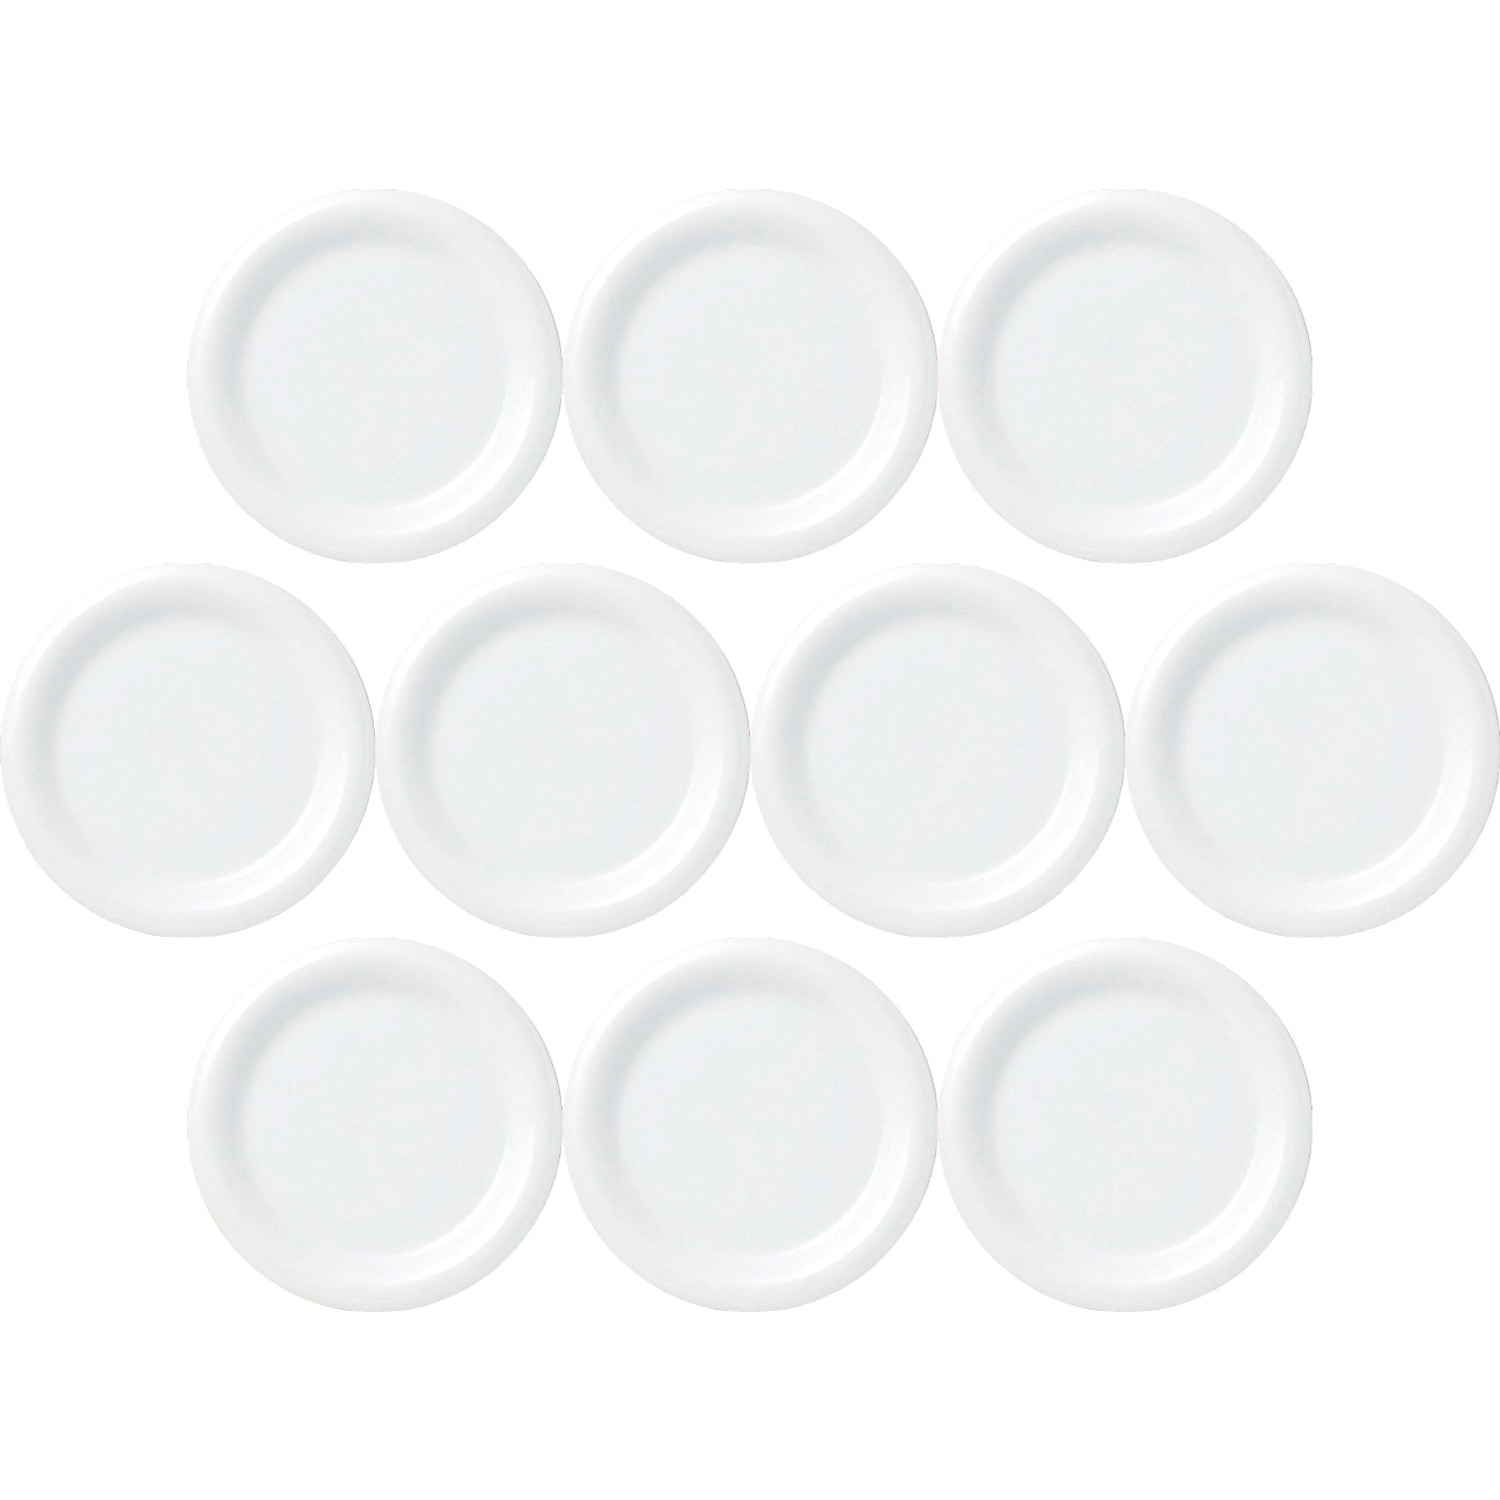 10個セット ホワイトハット 23cm皿 [22.8×2.5cm] | 洋食器 ハット 盛り皿 ホワイト 業務用